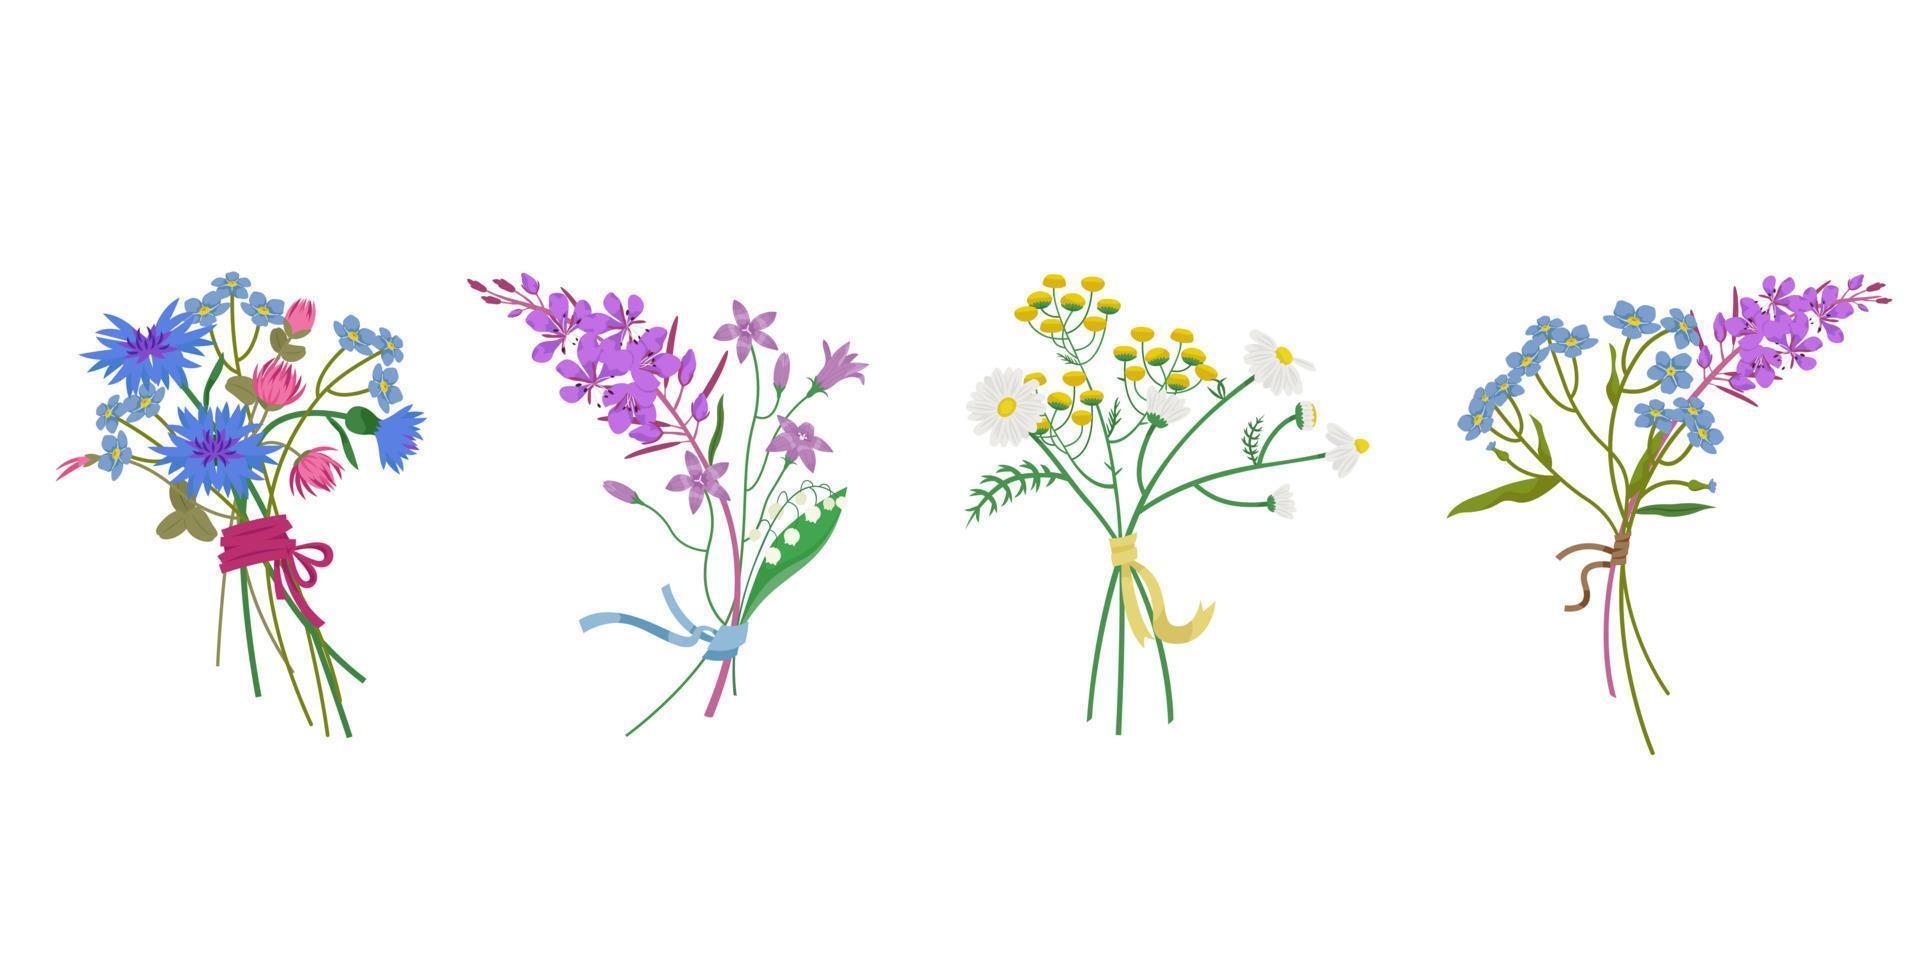 Reihe von Wildblumensträußen. verschiedene blumen im cartoon-stil. vektor